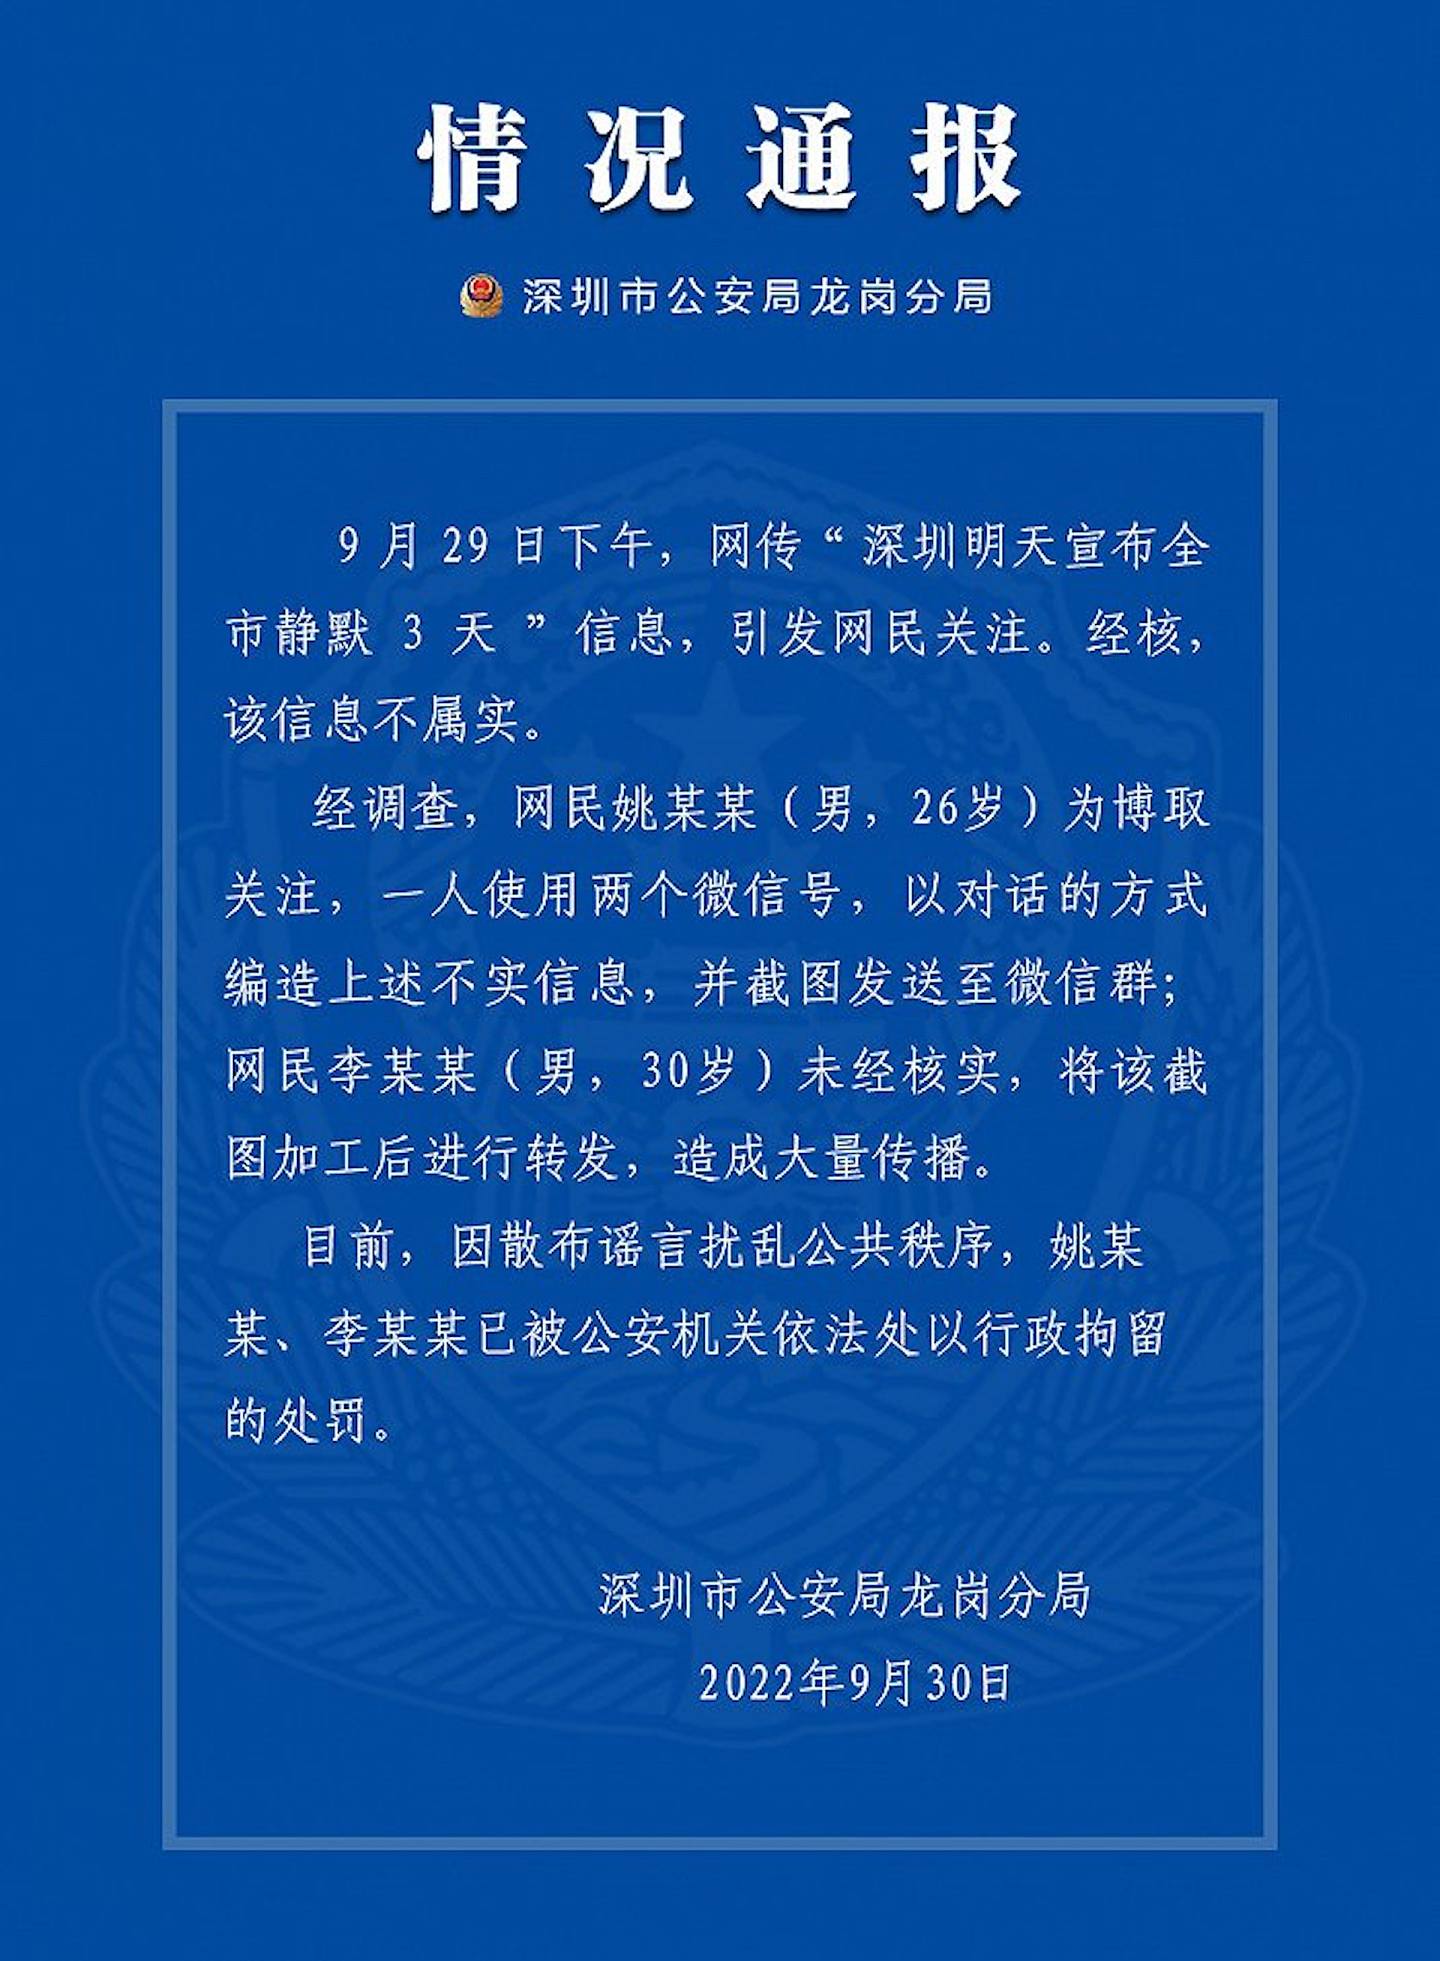 深圳公安指散播谣言者已被拘捕。 (微博)